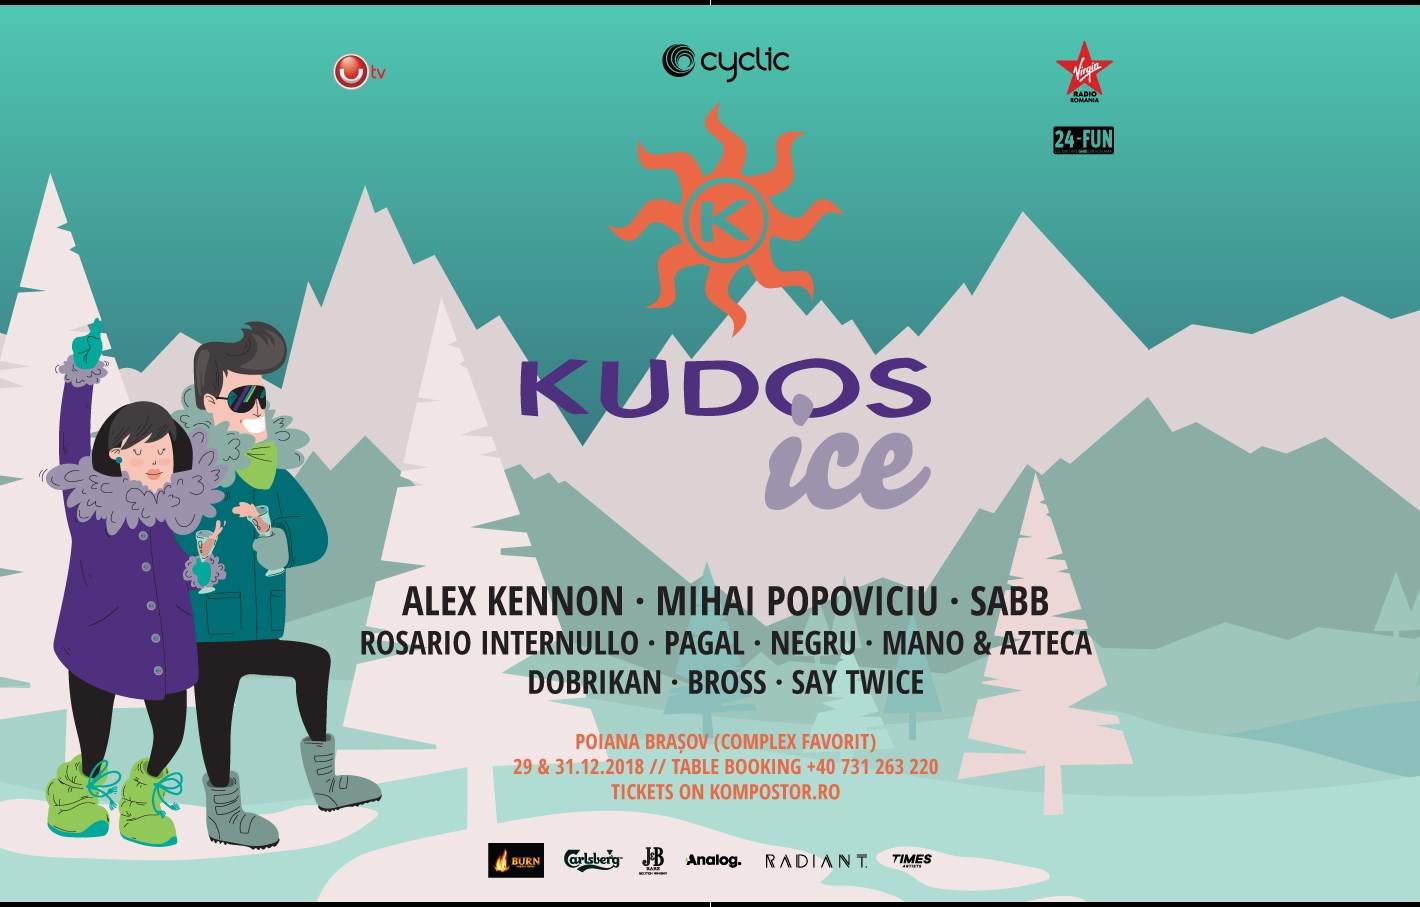 Kudos Ice / Poiana Brasov NYE 2019 - フライヤー表